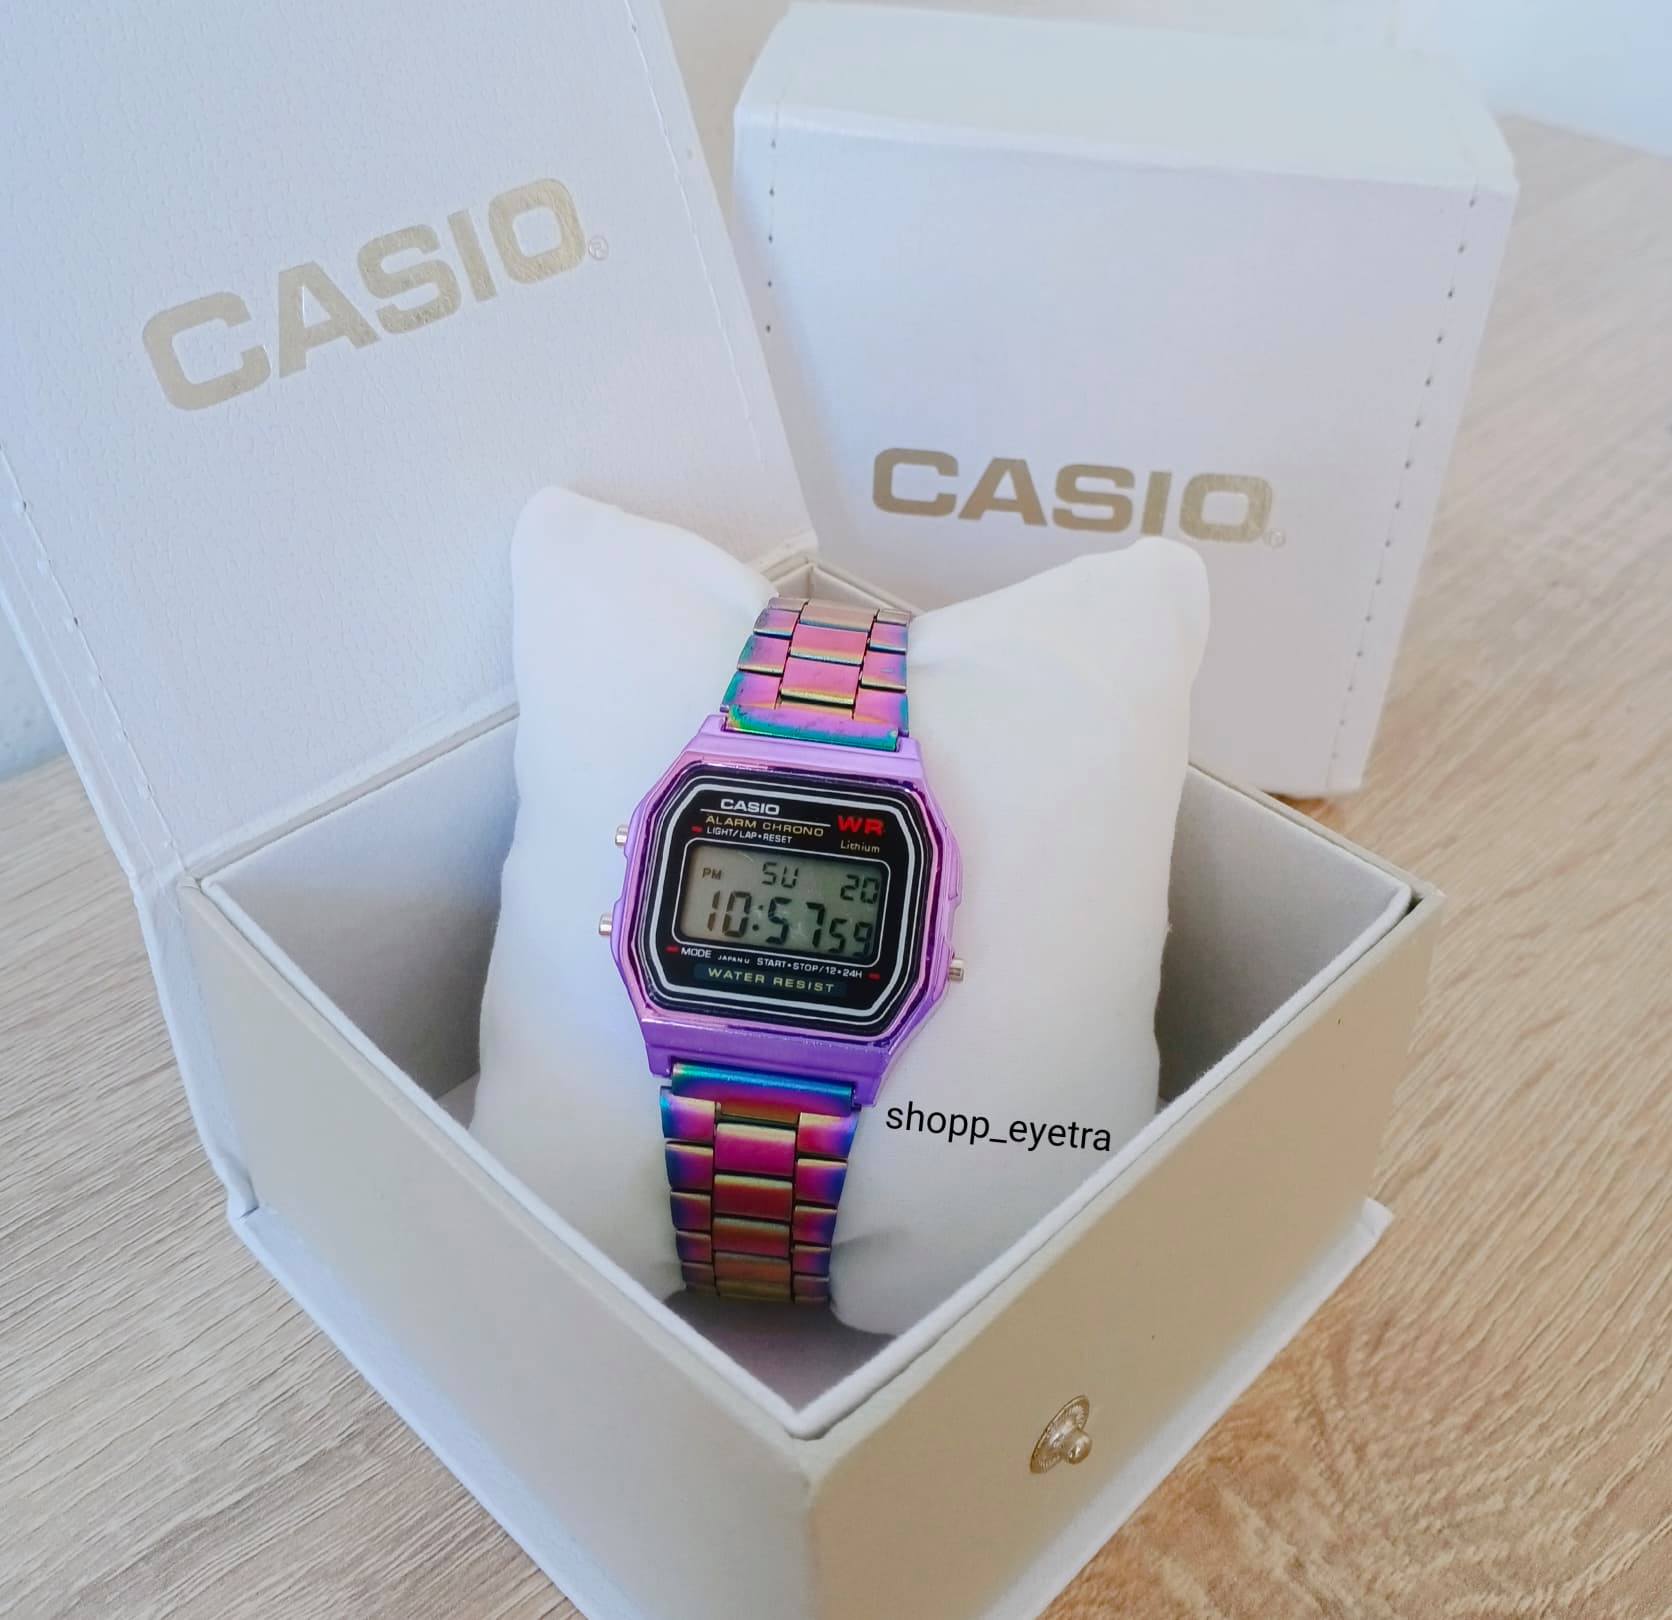 (ลดราคา+ฟรี)นาฬิกาแฟชั่น Casio F91 สินค้าใหม่ กันน้ำได้ พร้อมกล่องคาสิโอกระดาษฟรี!!